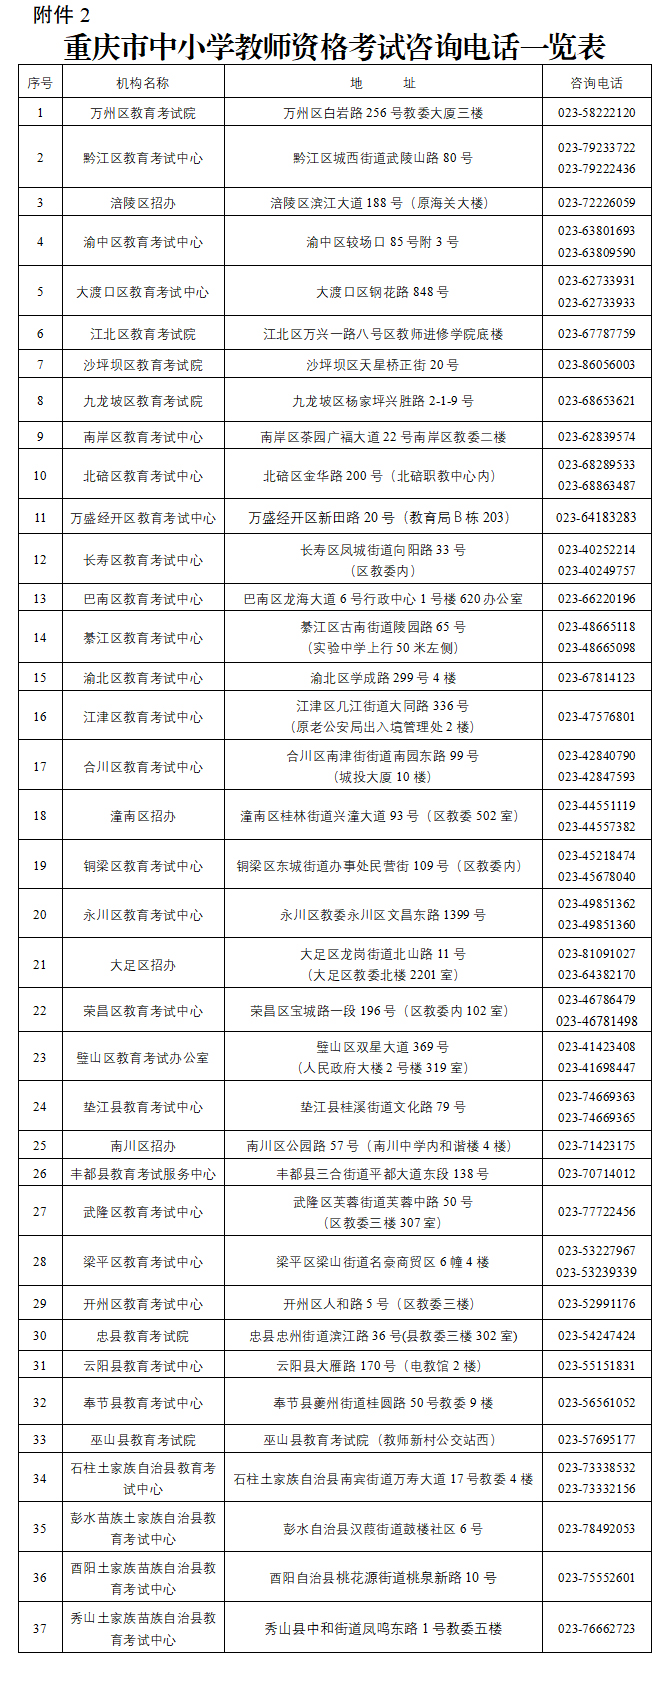 重庆市中小学教师资格考试咨询电话一览表